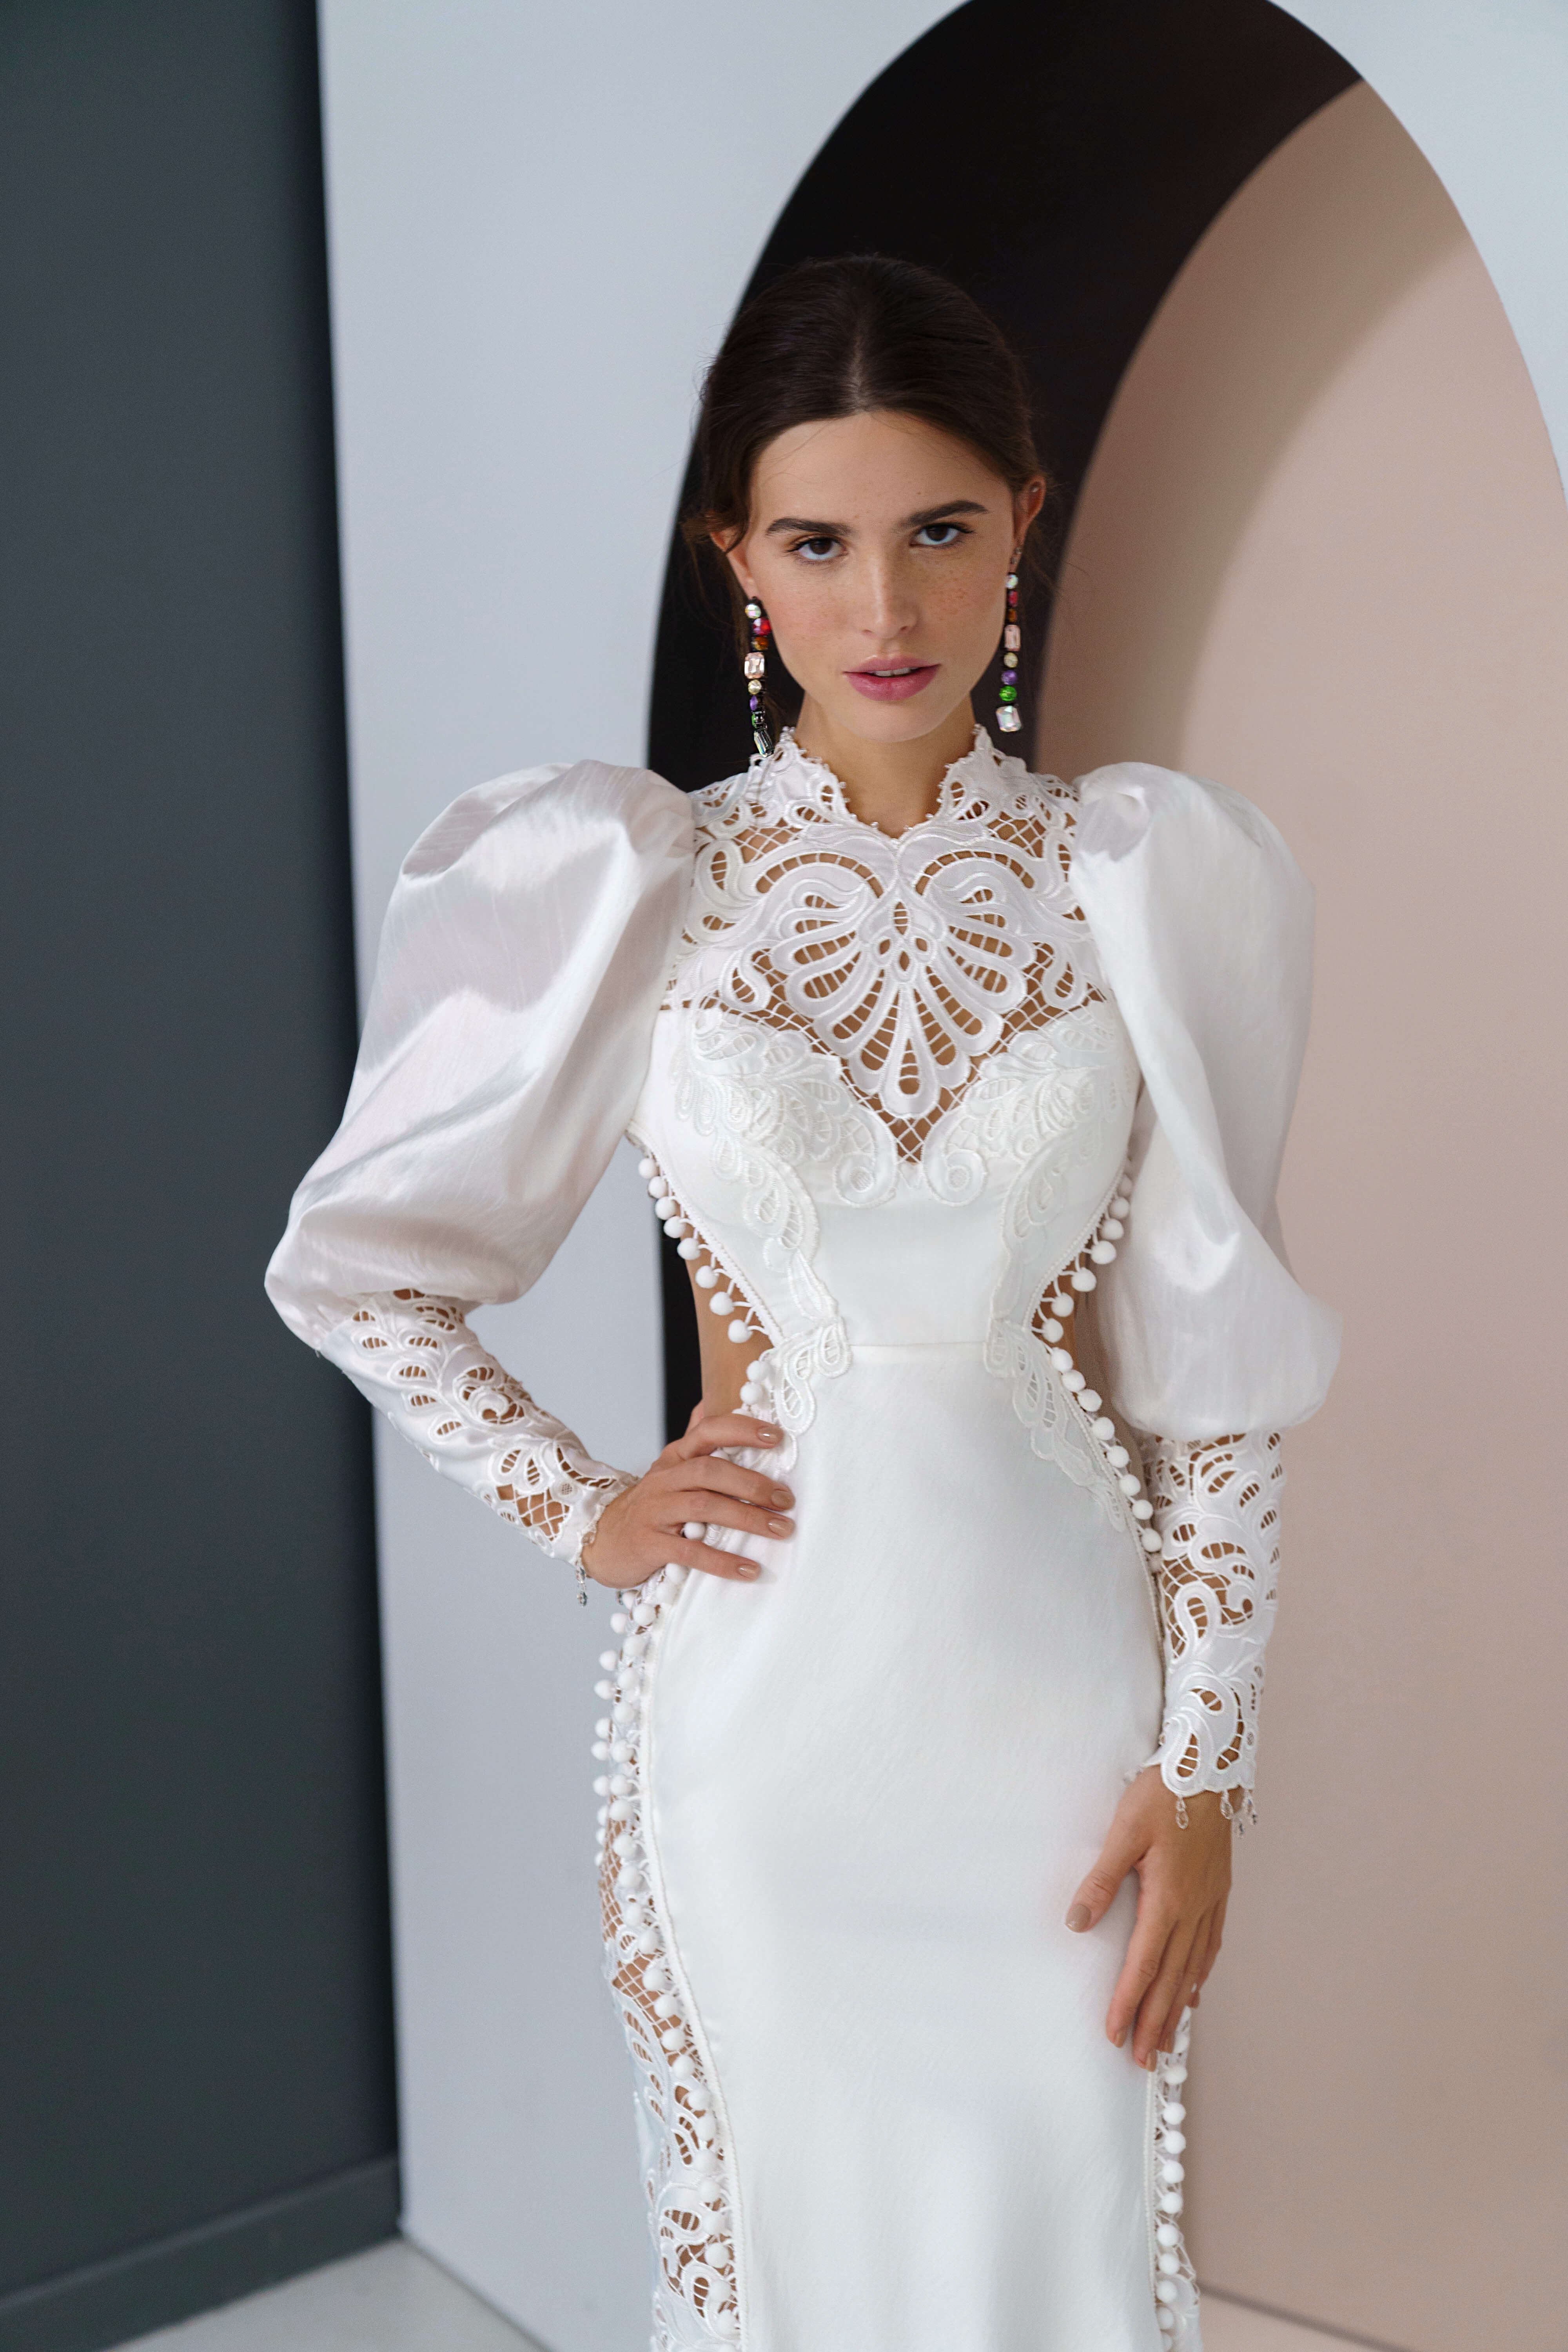 Купить свадебное платье «Инес» Рара Авис из коллекции Аморе Мио 2022 года в салоне «Мэри Трюфель»